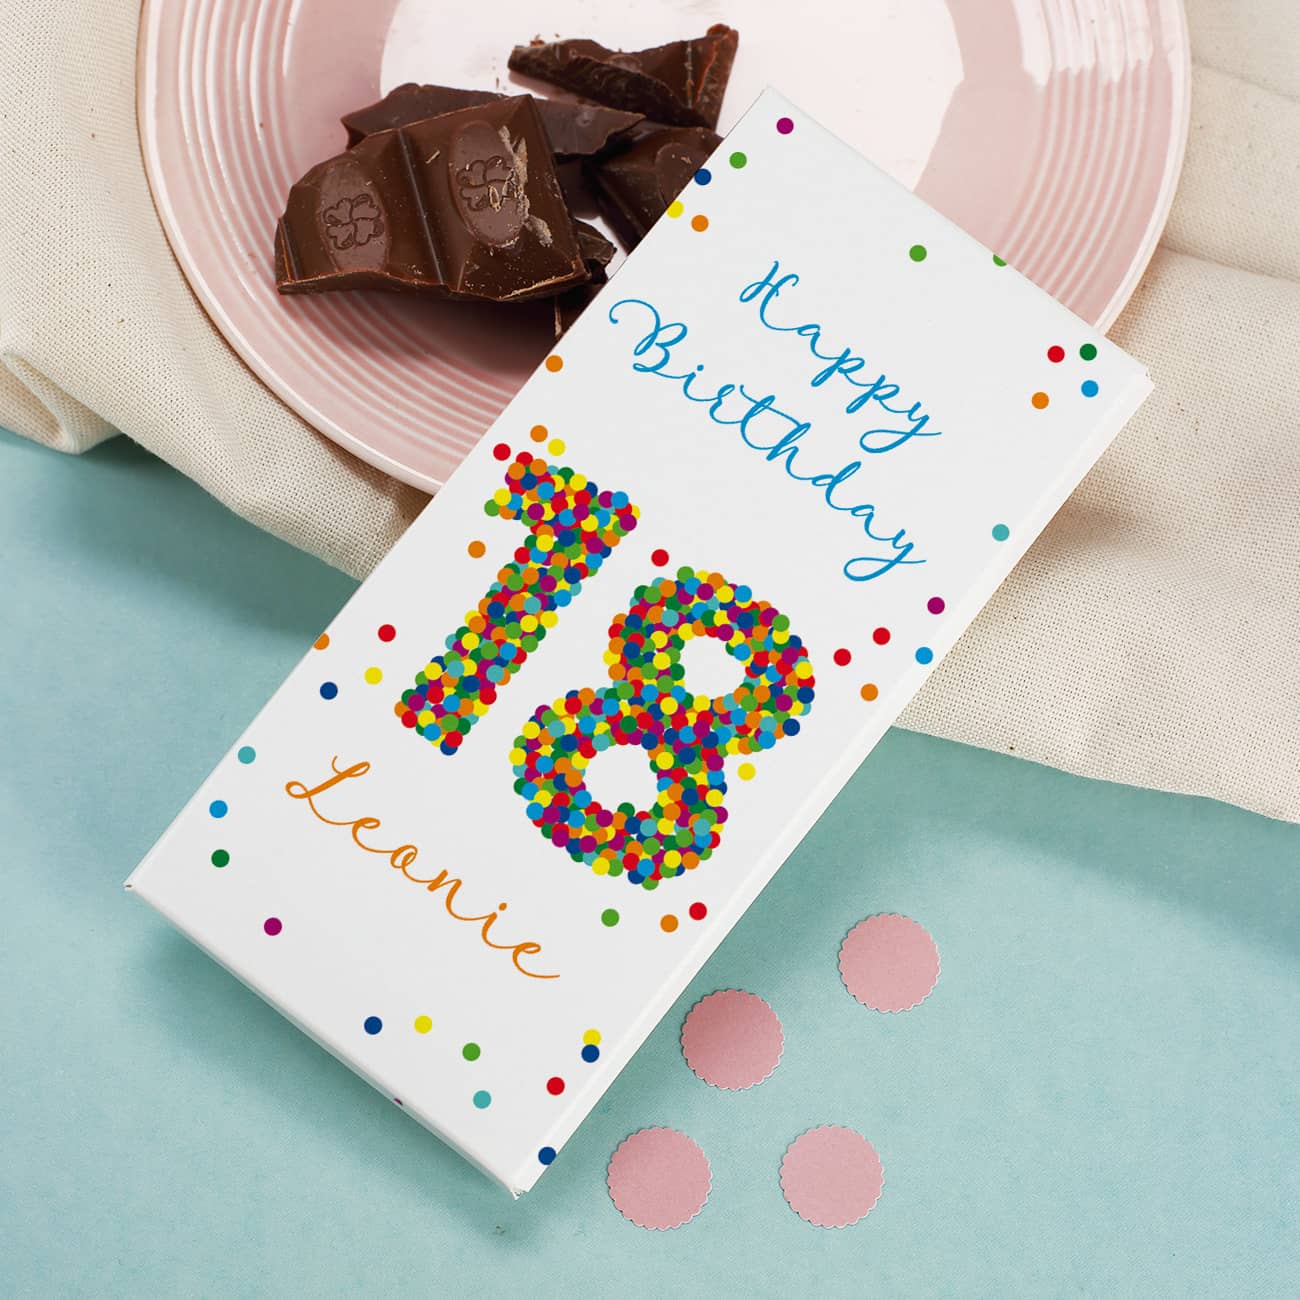 100g Schokolade zum 18. Geburtstag mit Wunschtext